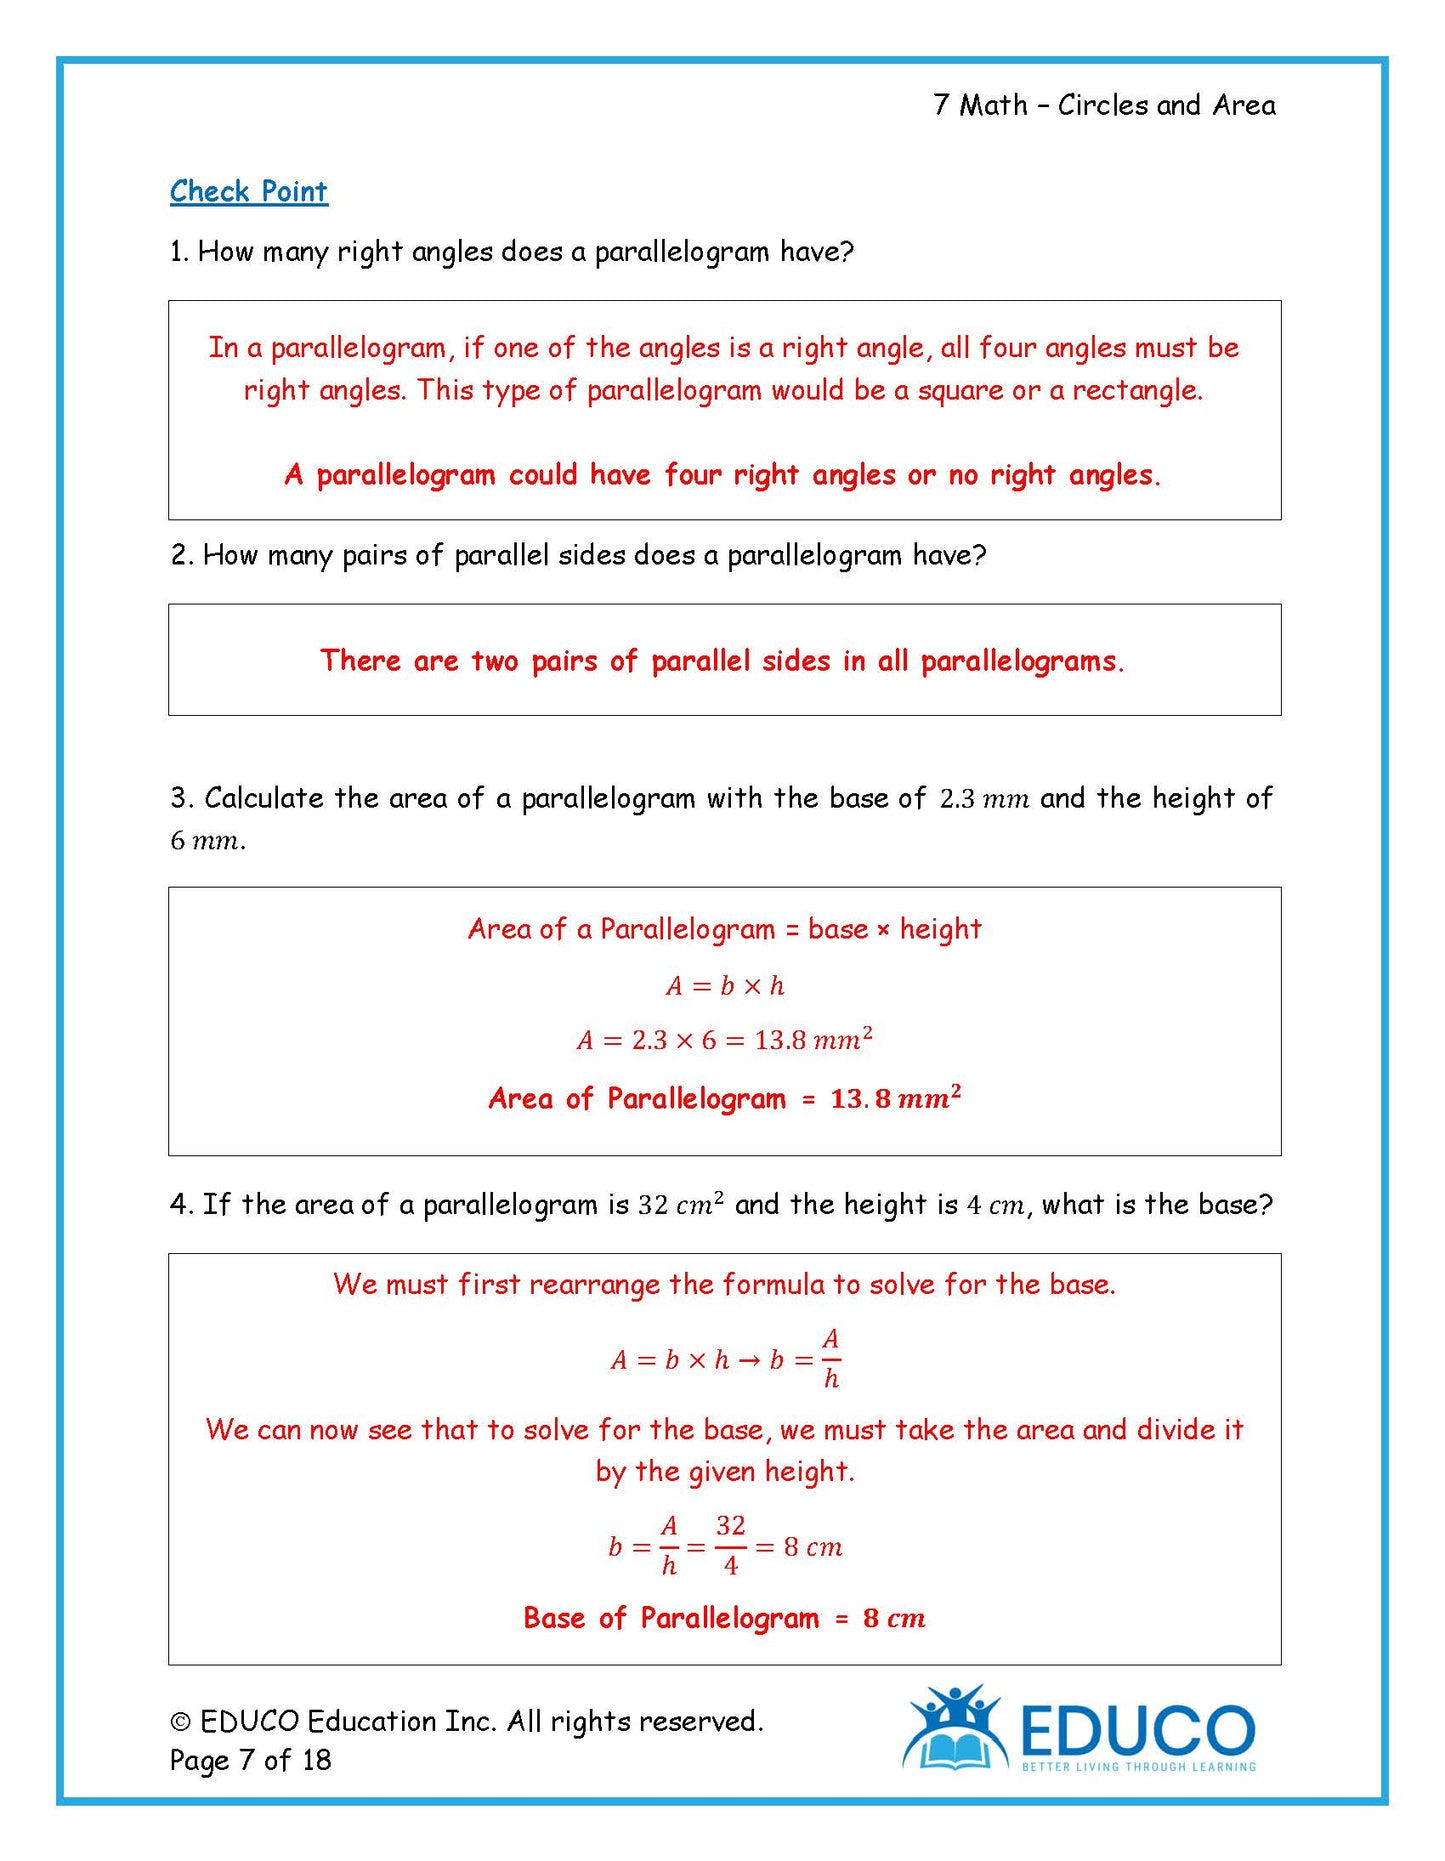 Unit 4: Circles and Area - Grade 7 Math (Digital Download)